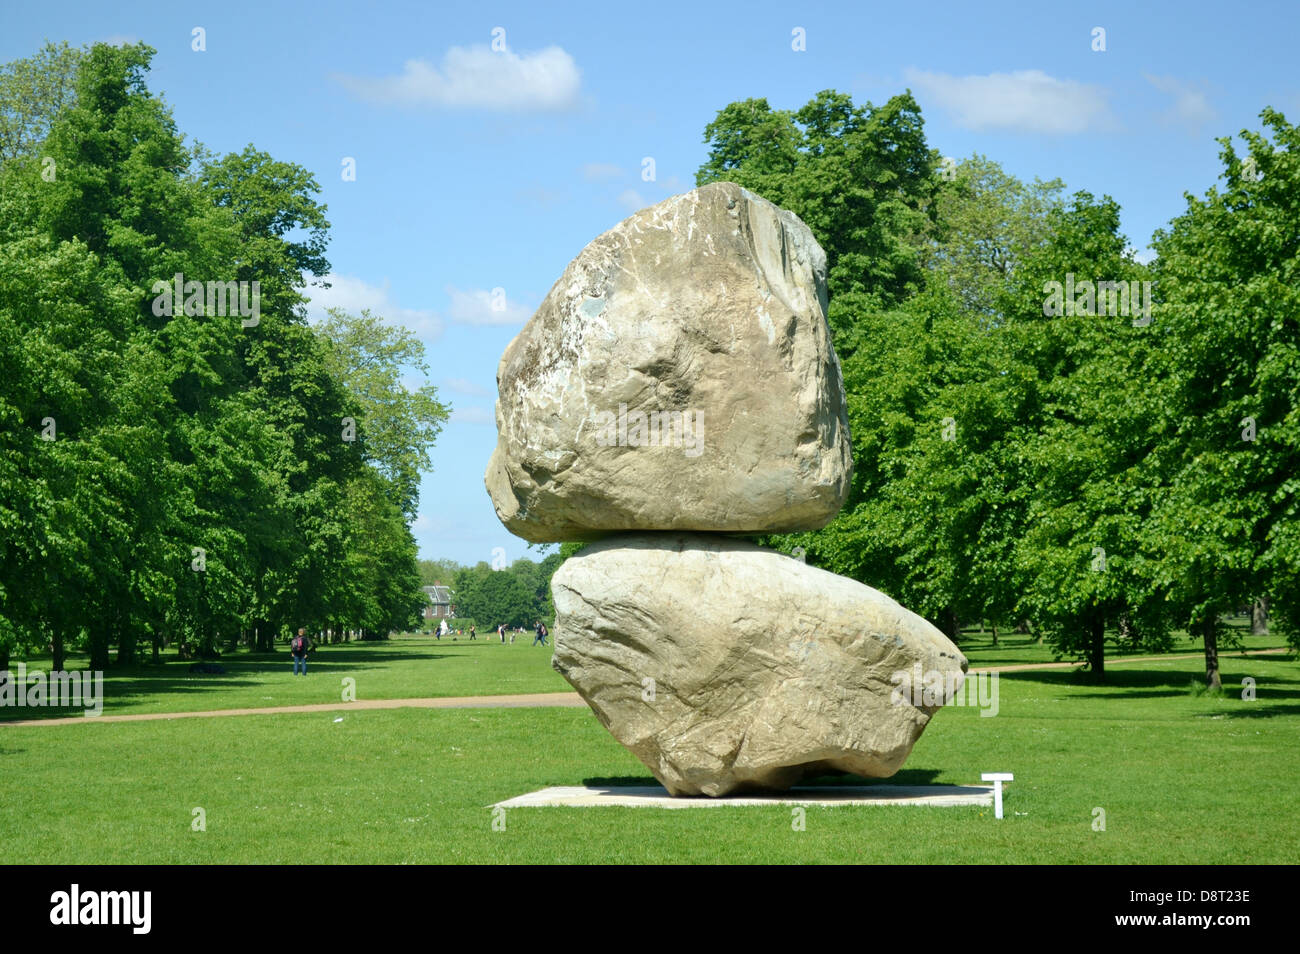 La sculpture "rocher au-dessus d'une autre Rock' par Fischli/Weiss, à la Serpentine Gallery, Kensington Gardens, Londres. Banque D'Images